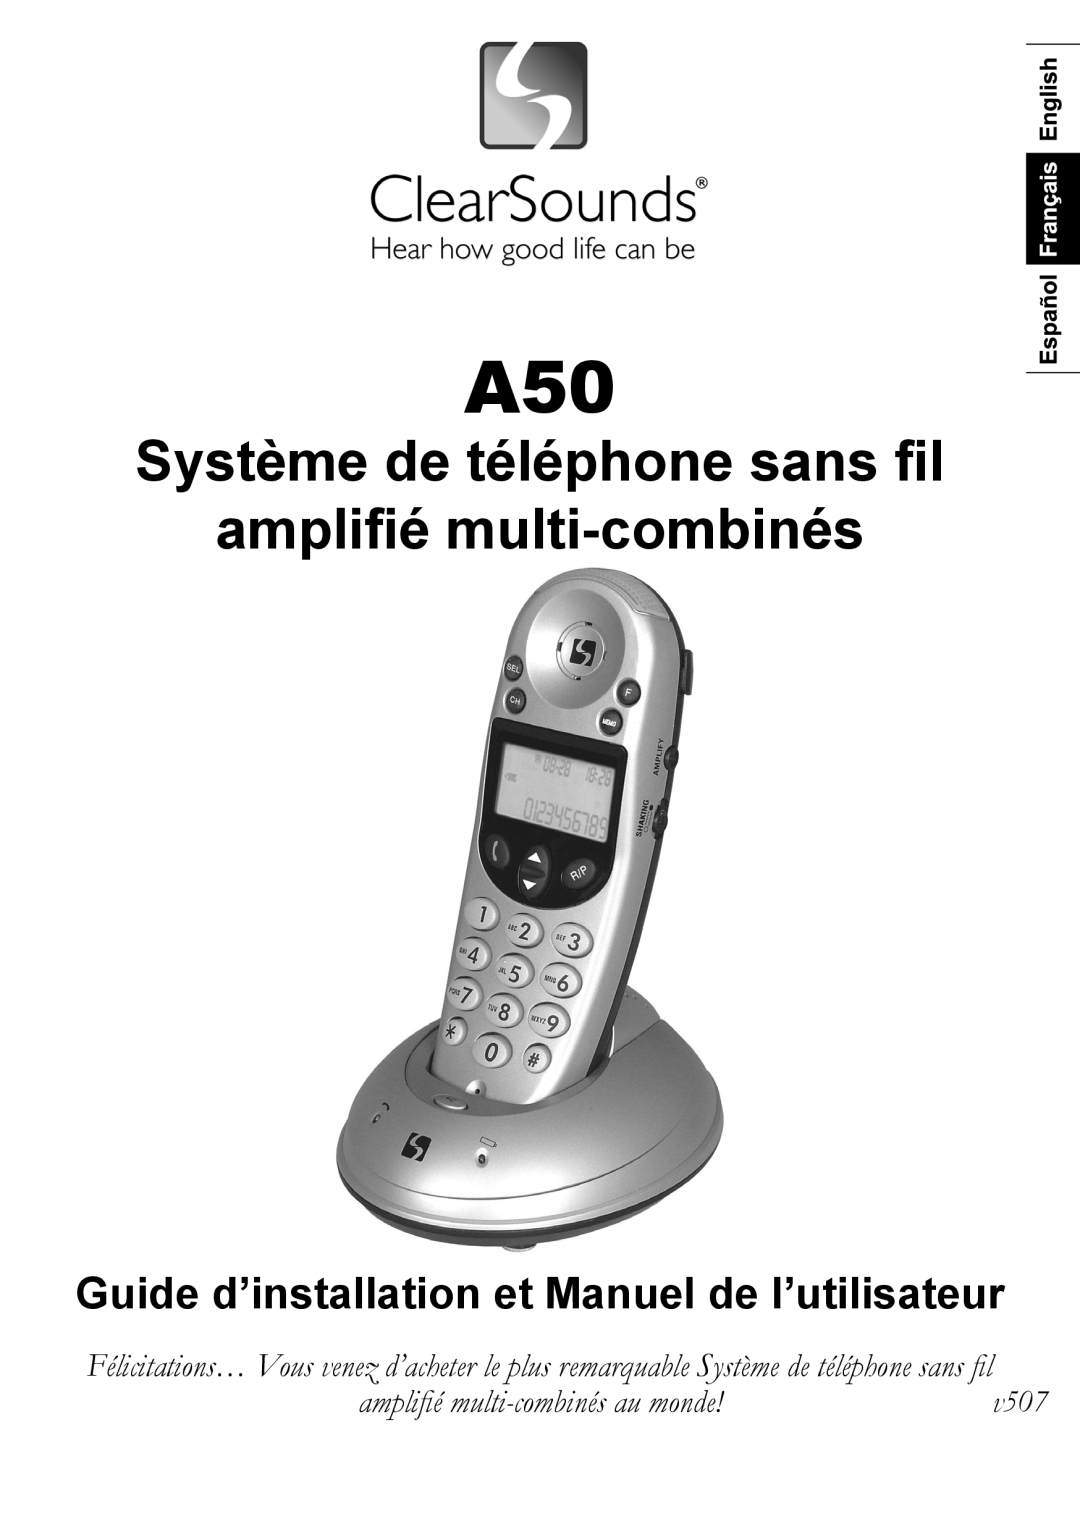 ClearSounds A50 Système de téléphone sans fil amplifié multi-combinés, Guide d’installation et Manuel de l’utilisateur 